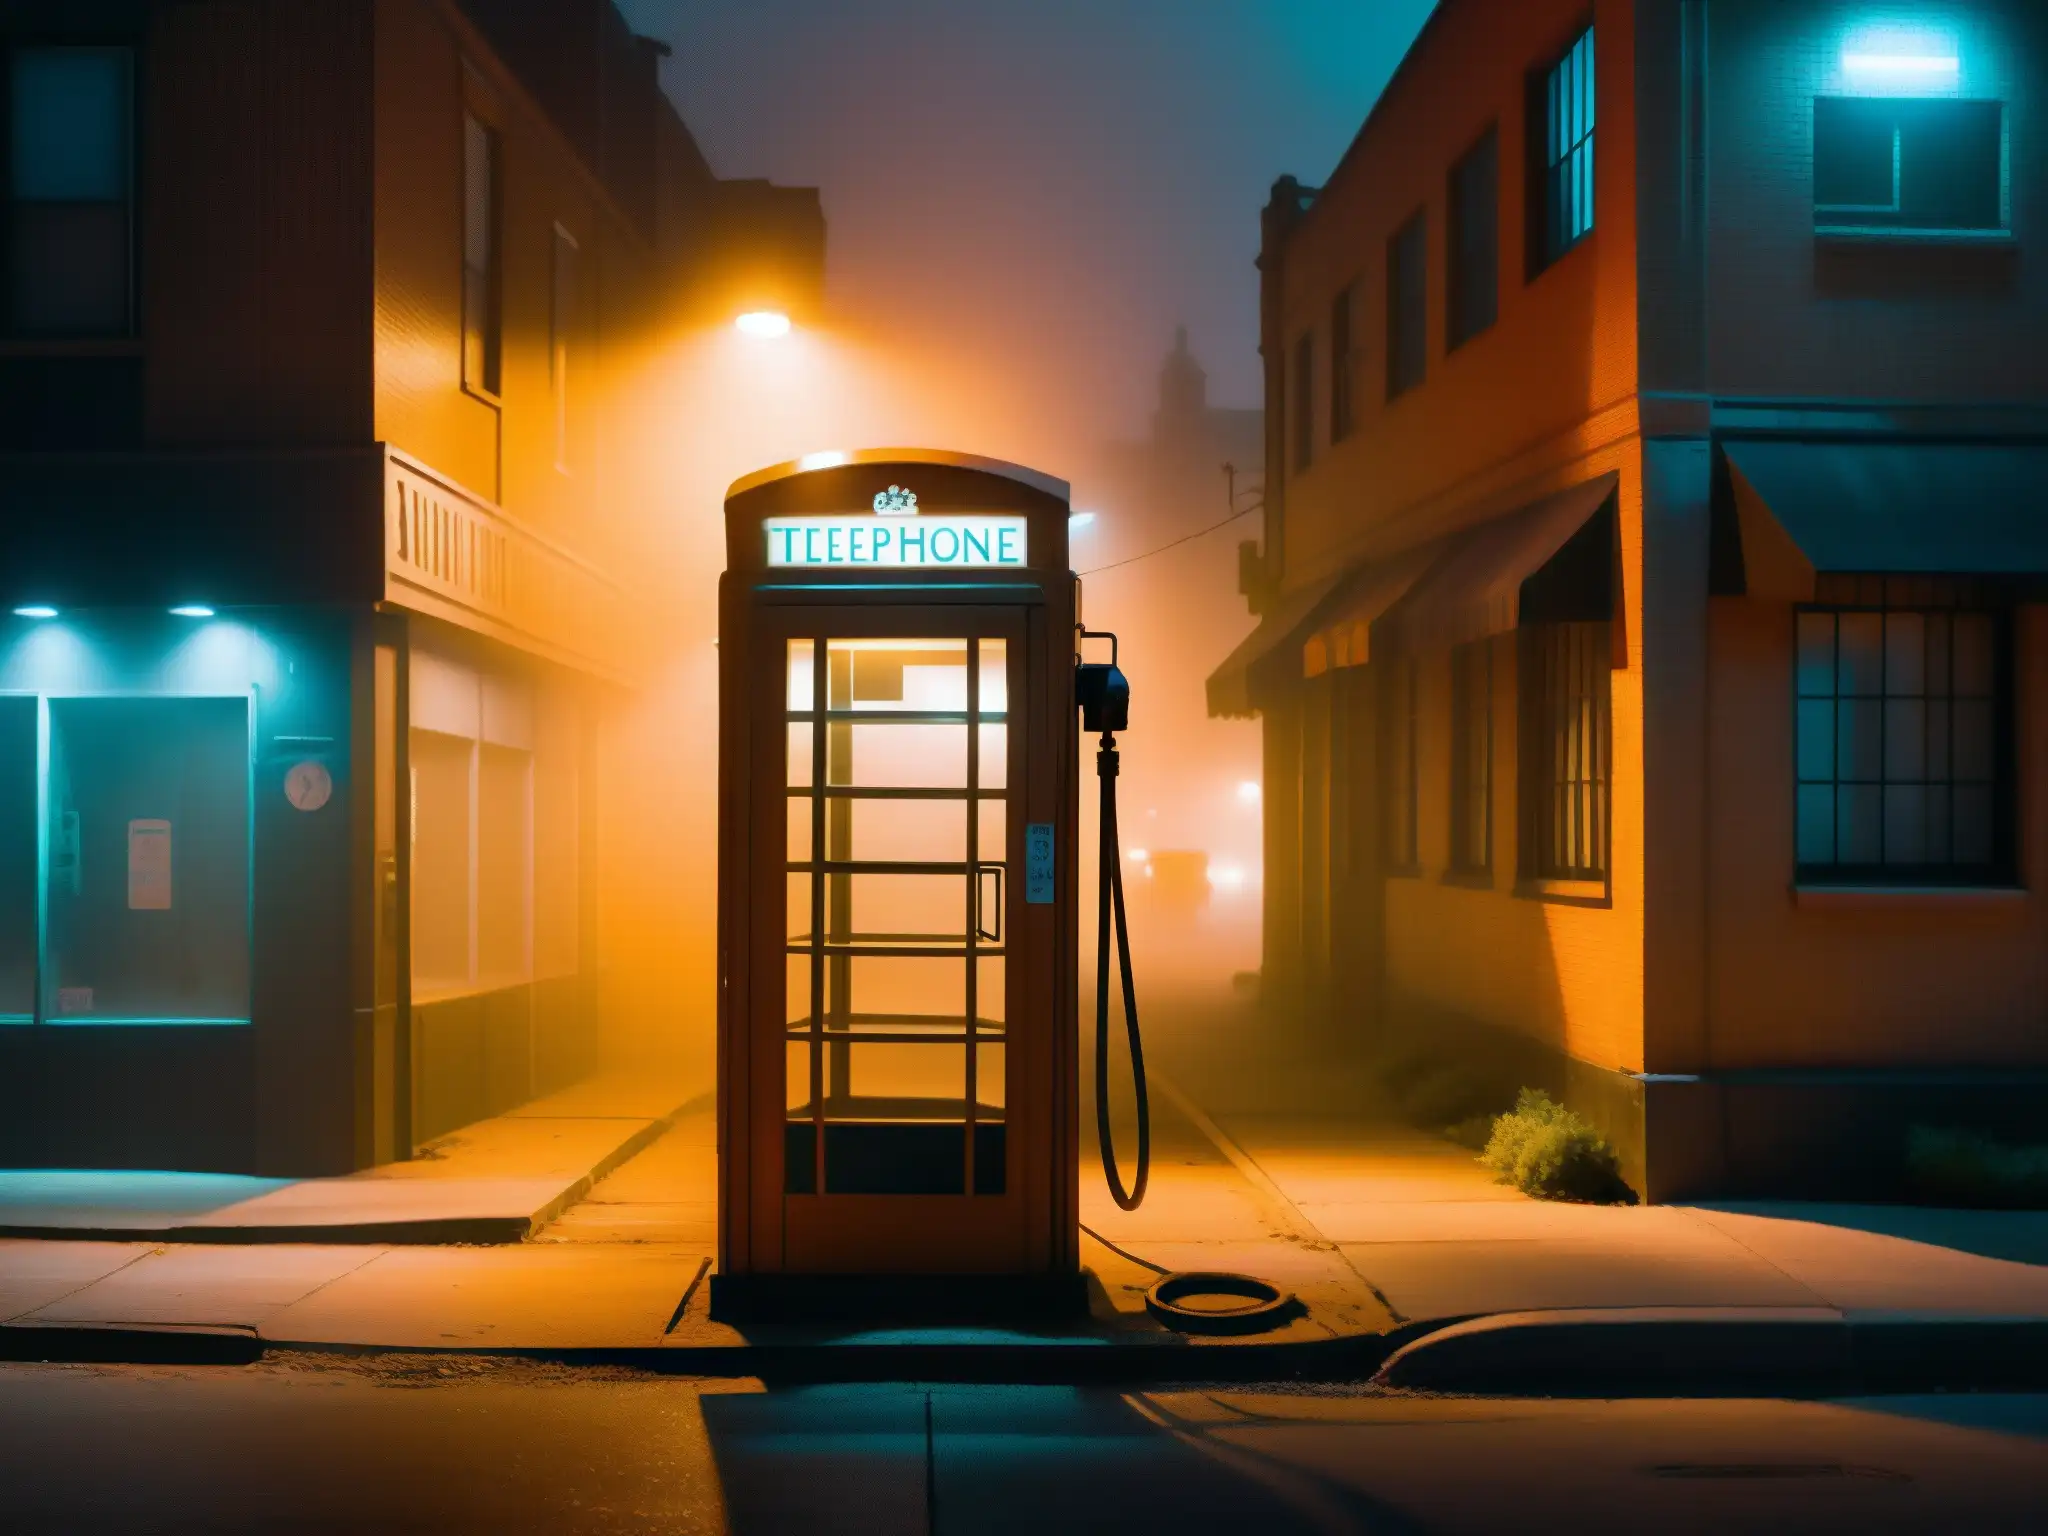 Una cabina telefónica abandonada en una calle desolada envuelta en niebla, con un tono naranja ominoso